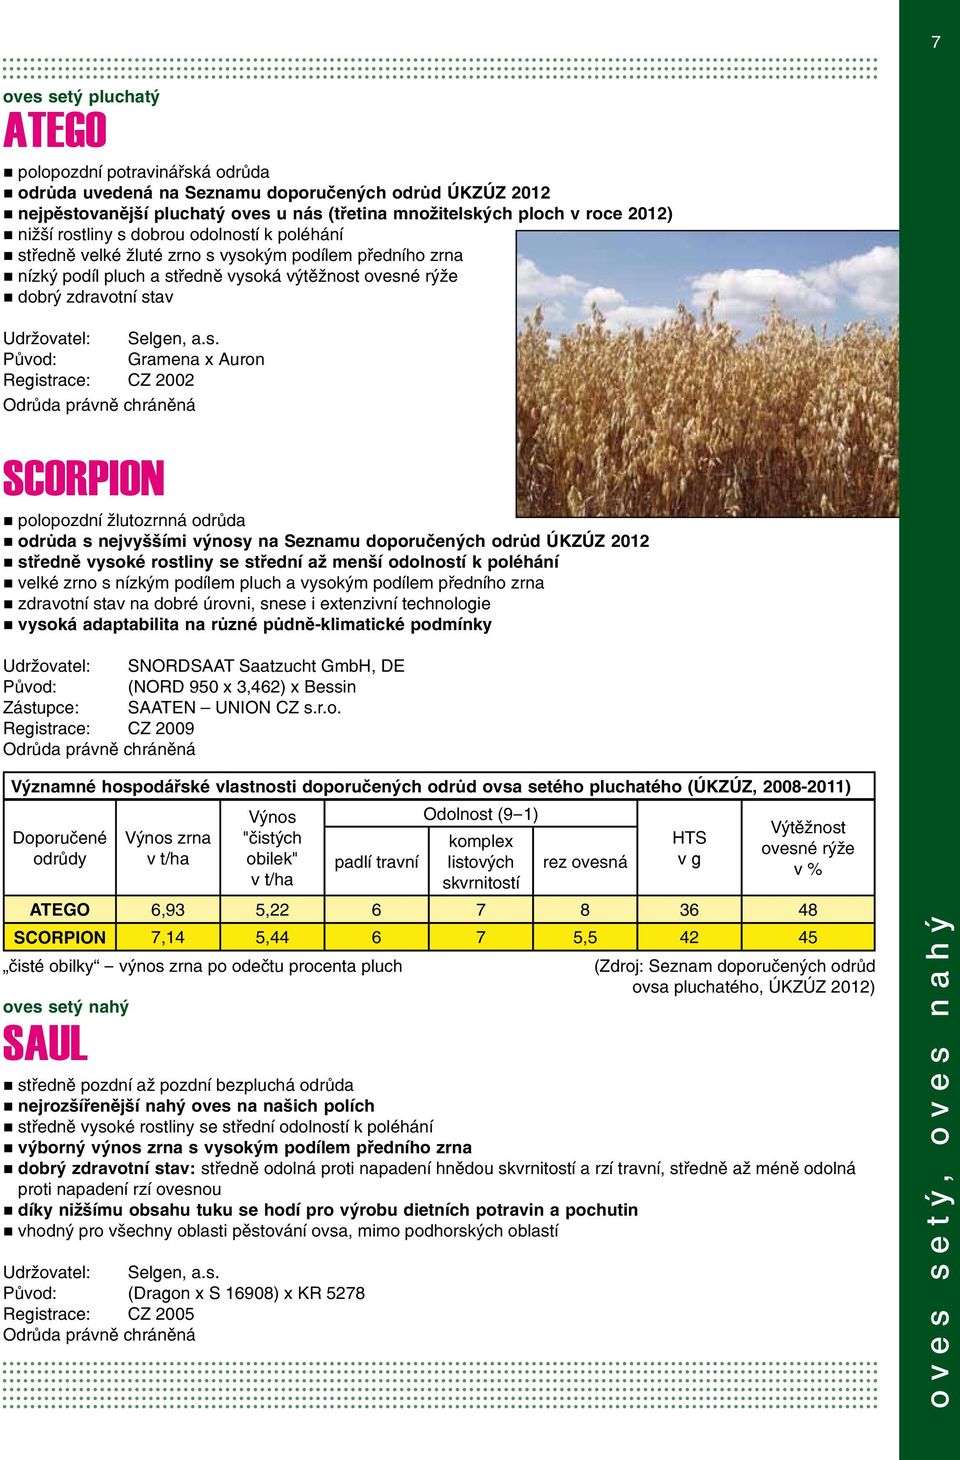 Původ: Gramena x Auron Registrace: CZ 2002 SCORPION polopozdní žlutozrnná odrůda odrůda s nejvyššími výnosy na Seznamu doporučených odrůd ÚKZÚZ 2012 středně vysoké rostliny se střední až menší